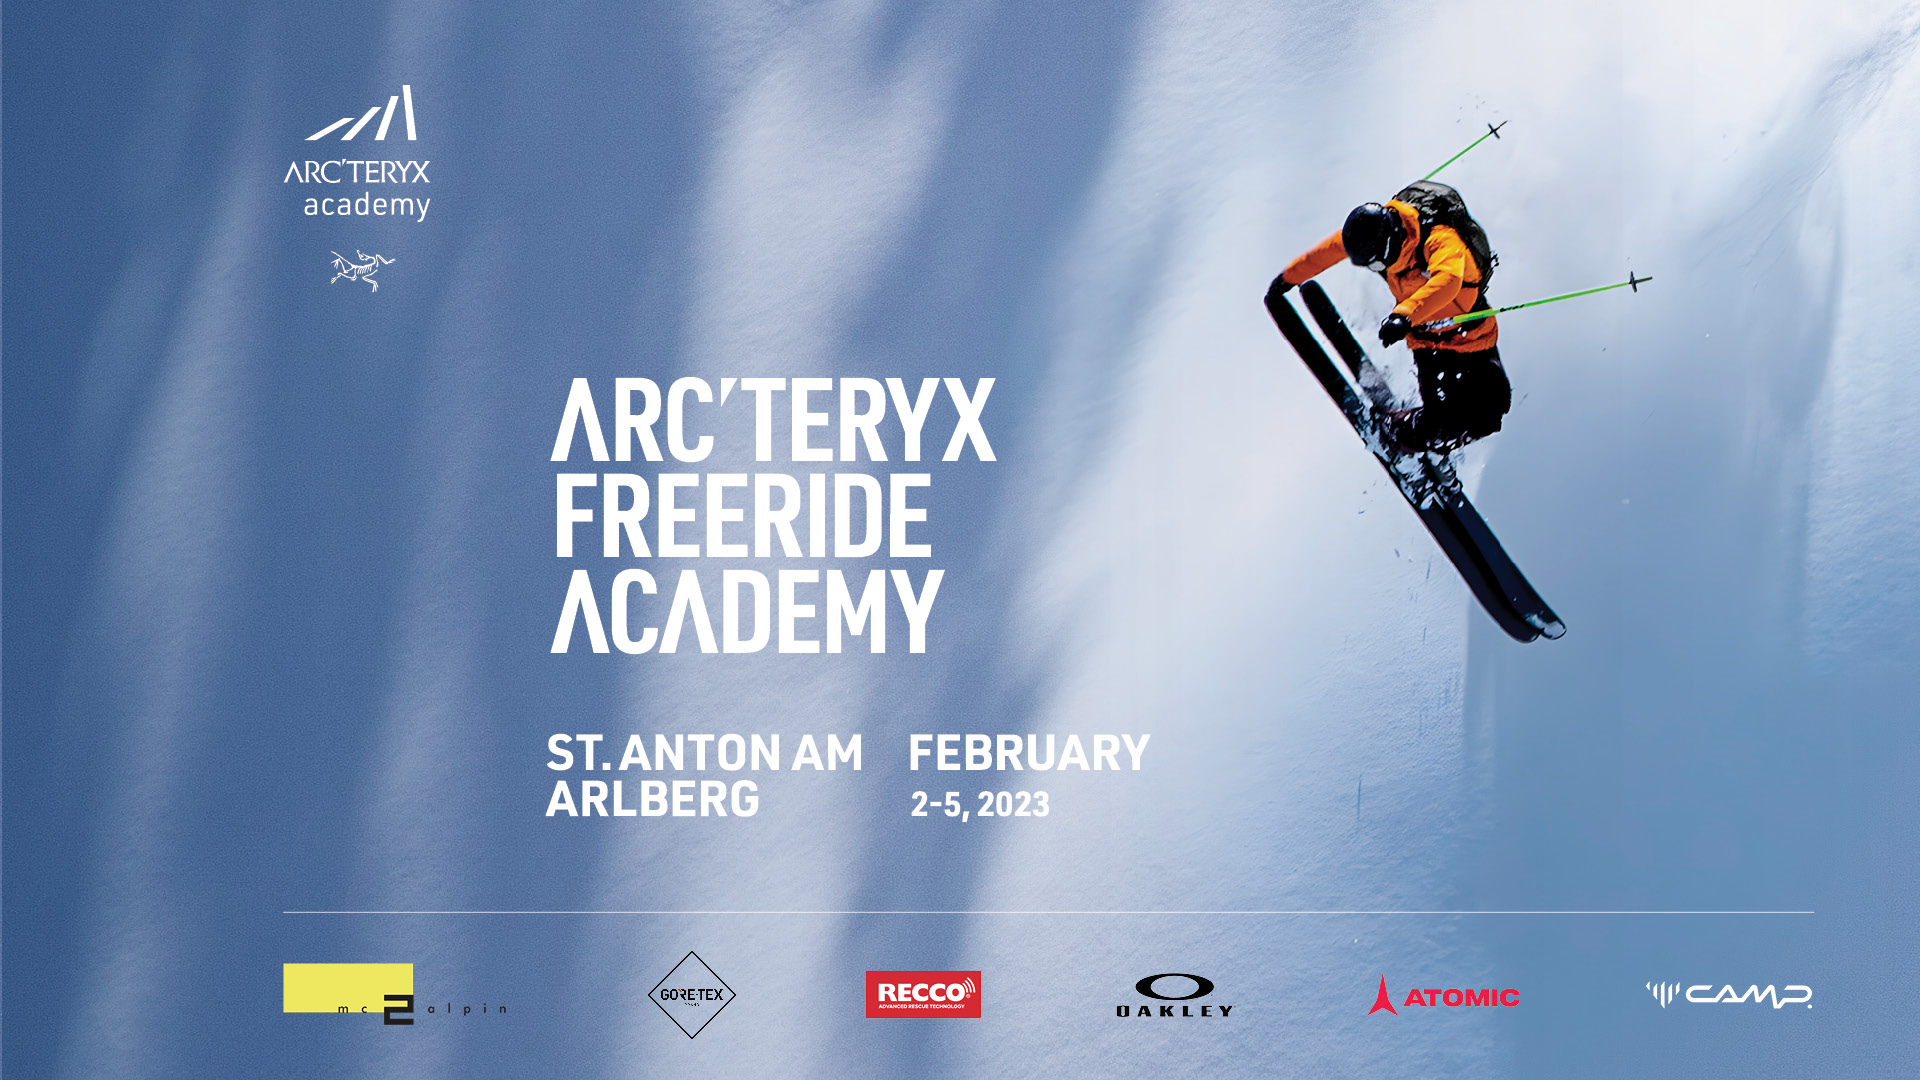 Win an Arc'teryx ski bundle to celebrate freeride academy return